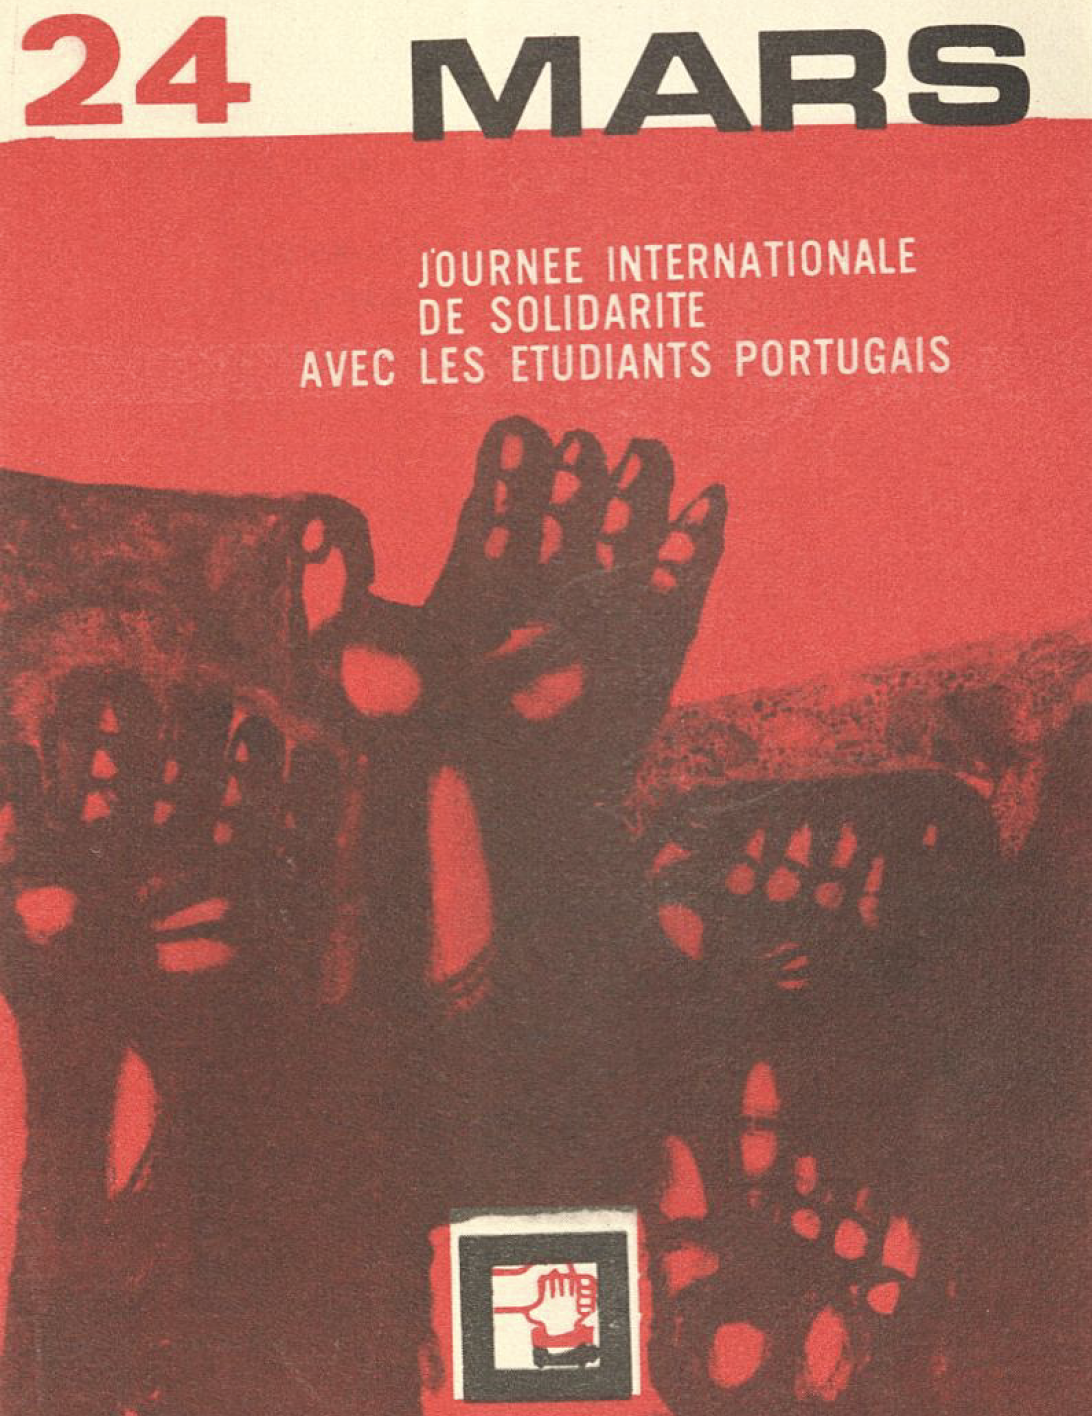 "24 mars journée internationale de solidarite aves les etudiants portugais"